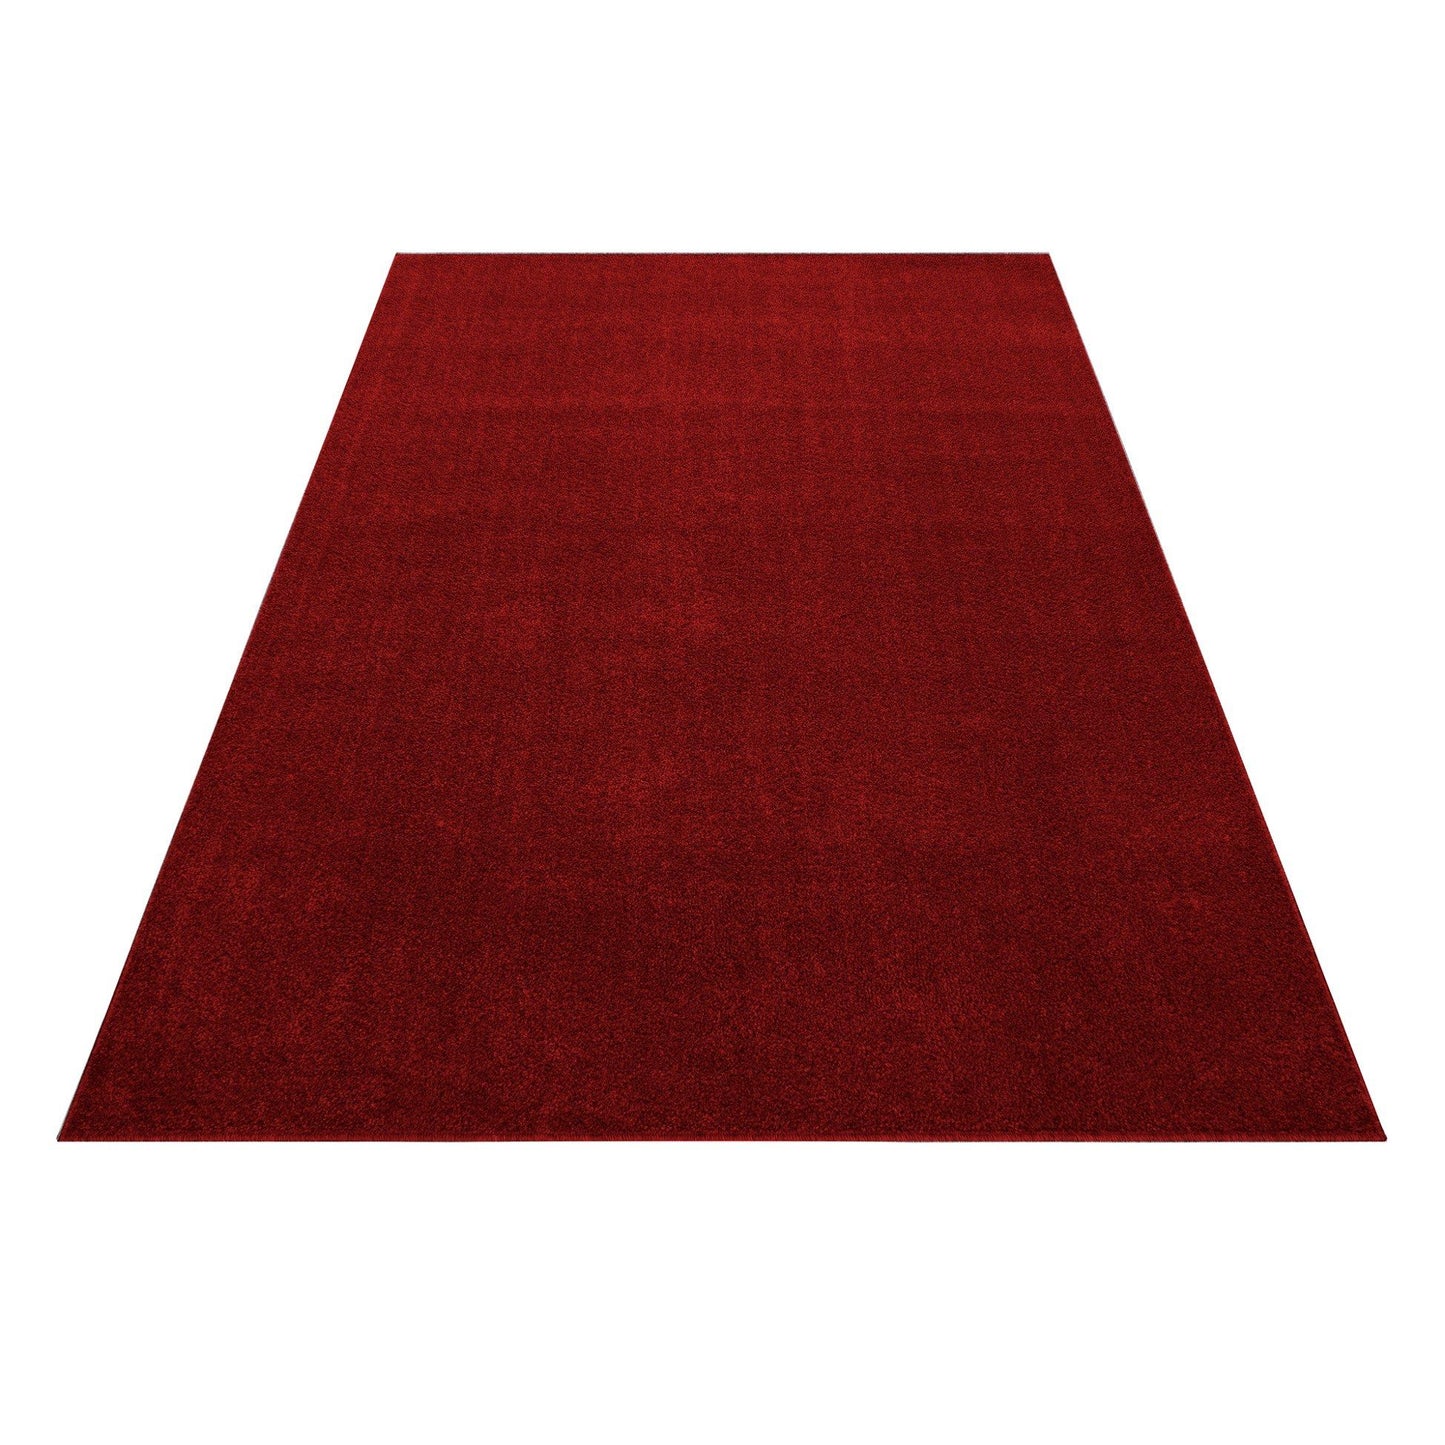 ATA7000RED Tæppe (280 x 370) - Rød